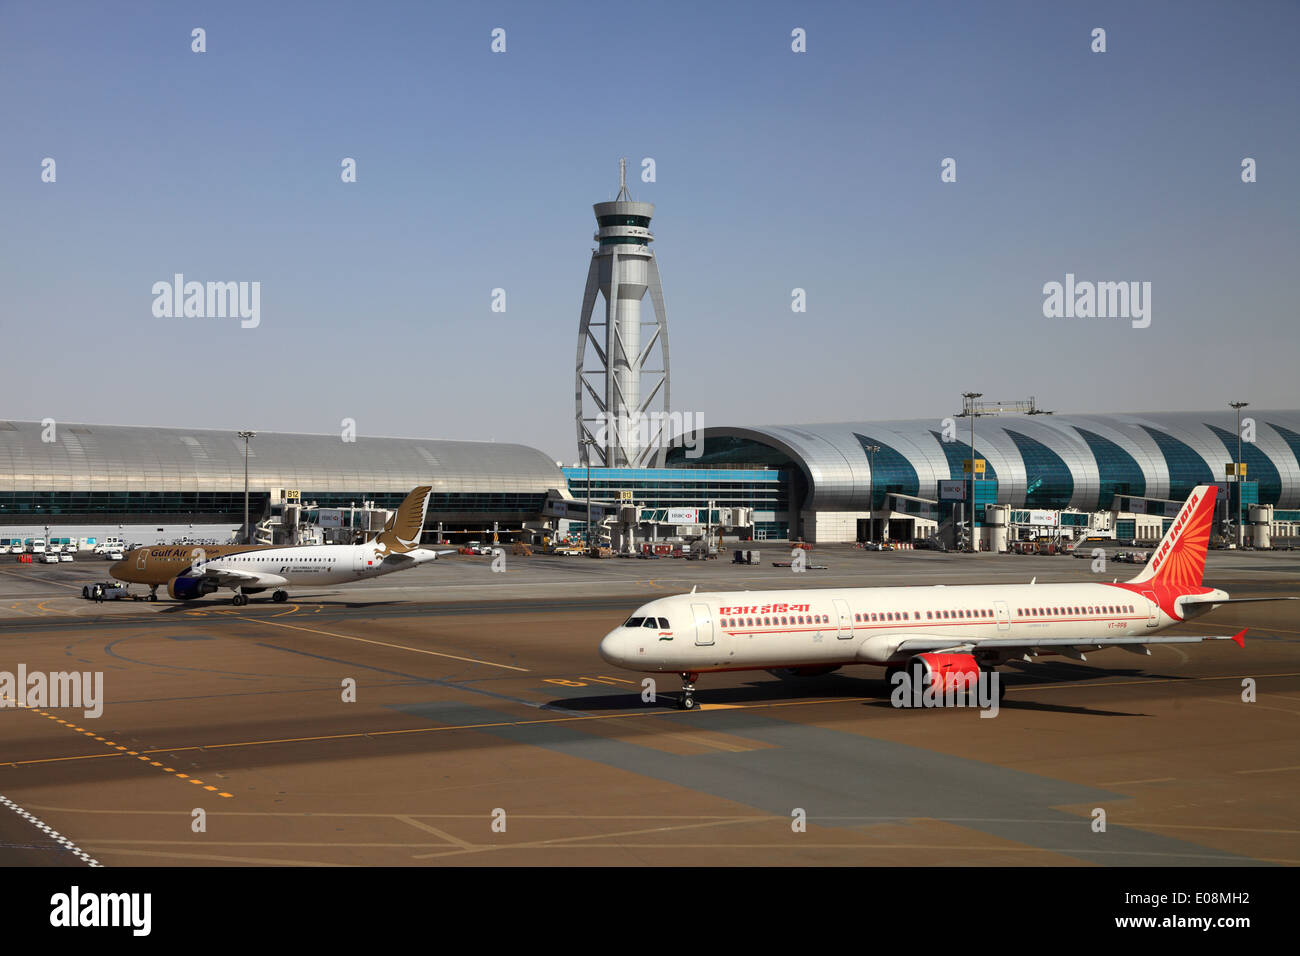 Air India et de Gulf Air des avions à l'aéroport de Dubaï, Émirats arabes unis Banque D'Images